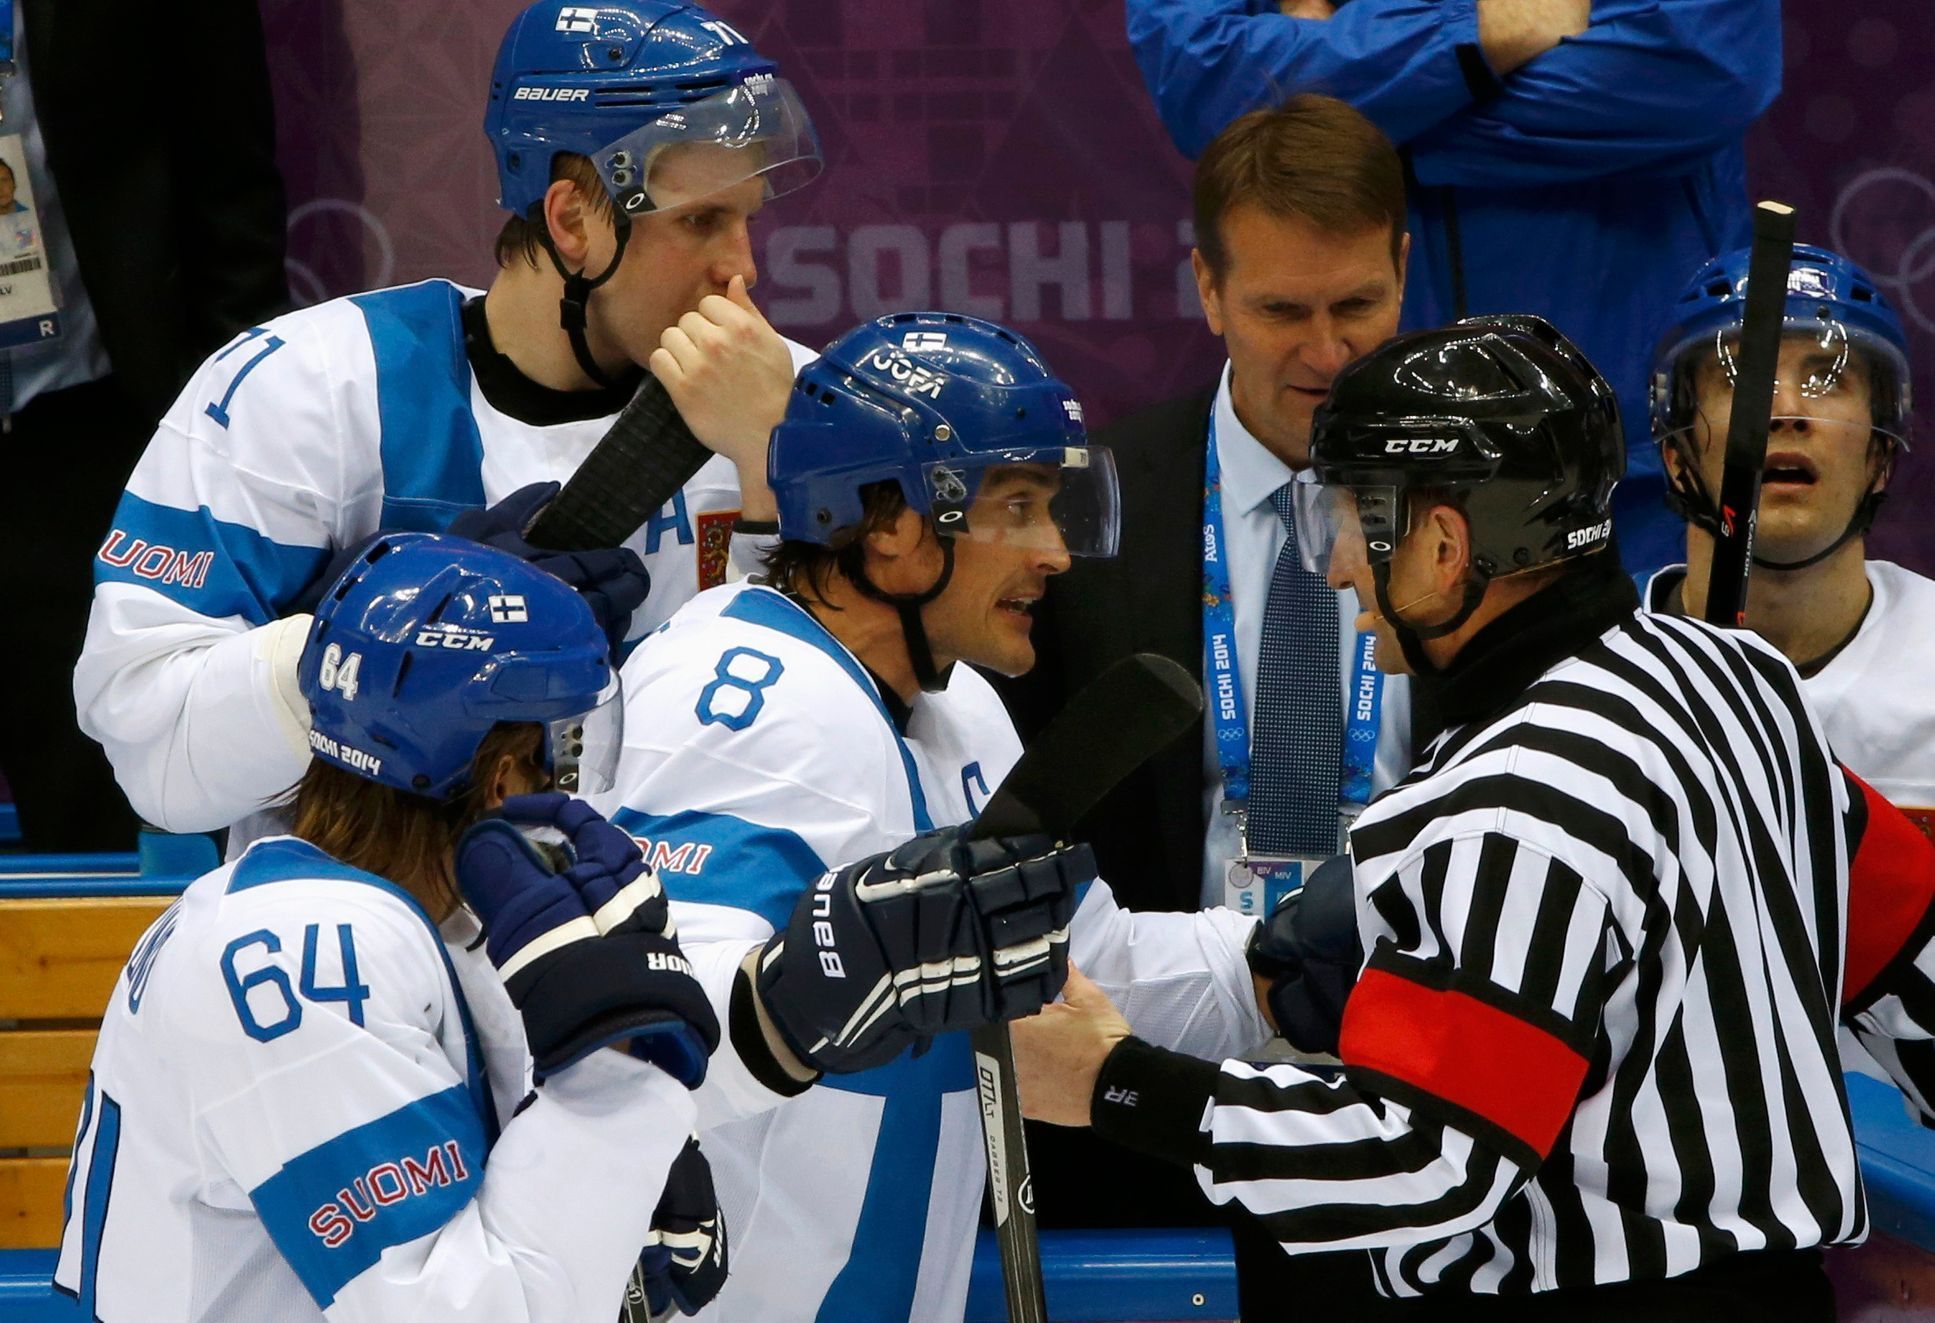 Finsko - USA, o bronz: Teemu Sëlanne (8) a Mikael Granlund (64) se zlobí na rozhodčího